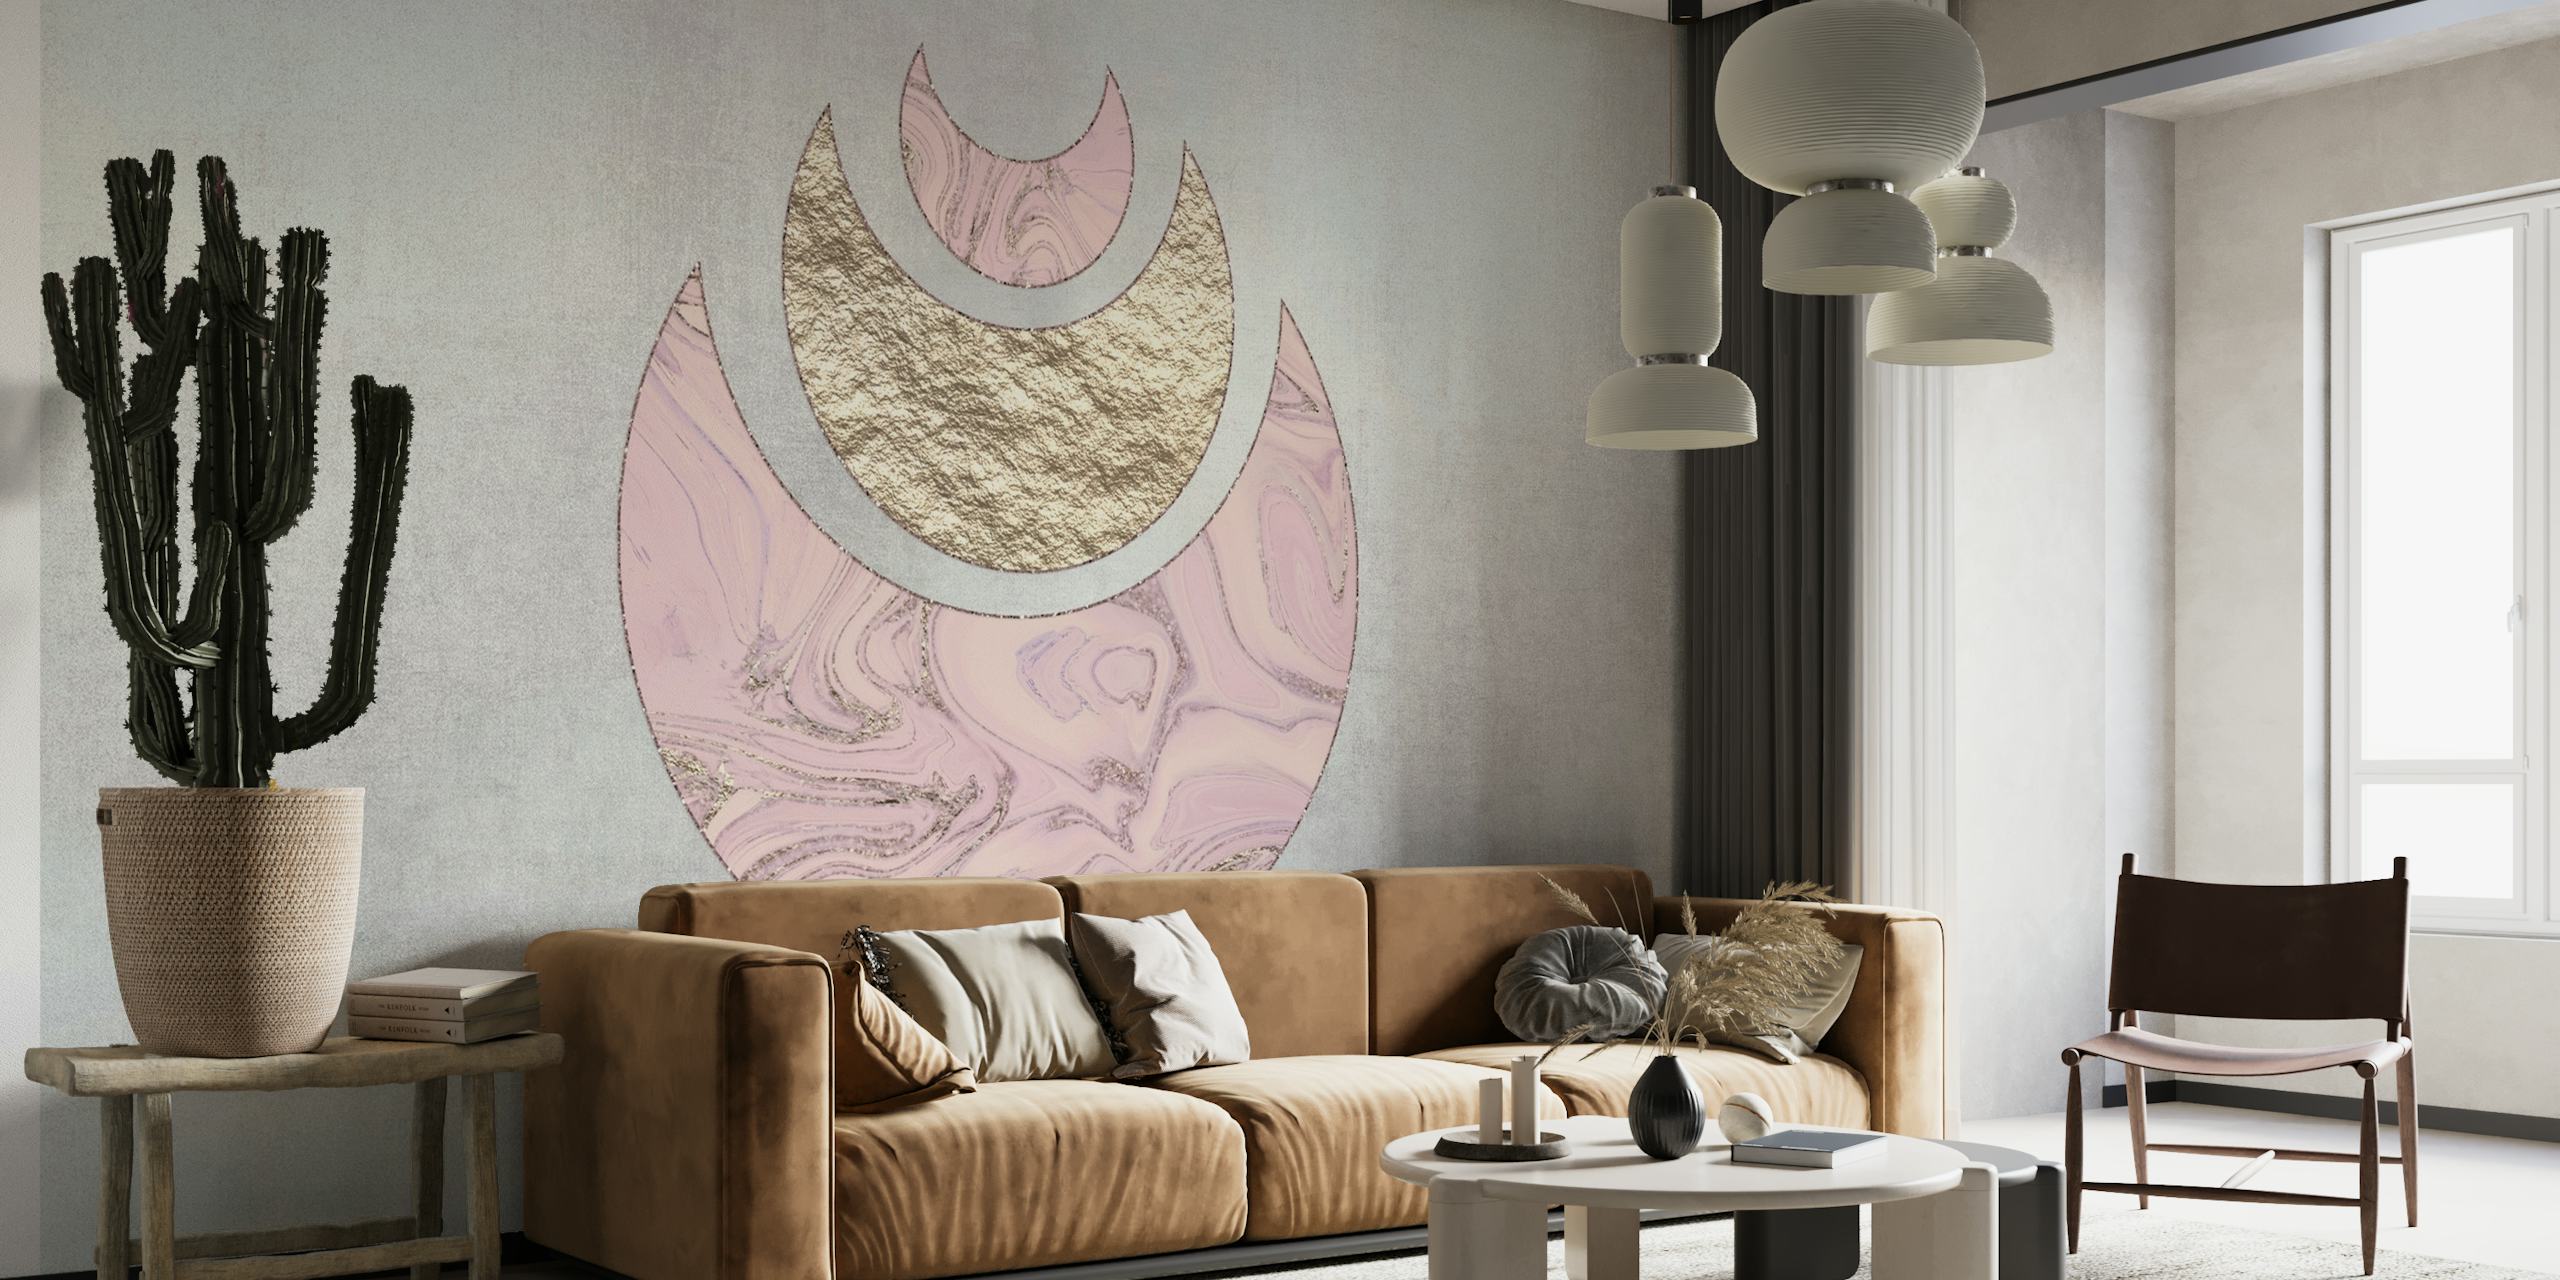 Peinture murale Blush Pink Half Moons avec des accents dorés et crème sur un fond texturé